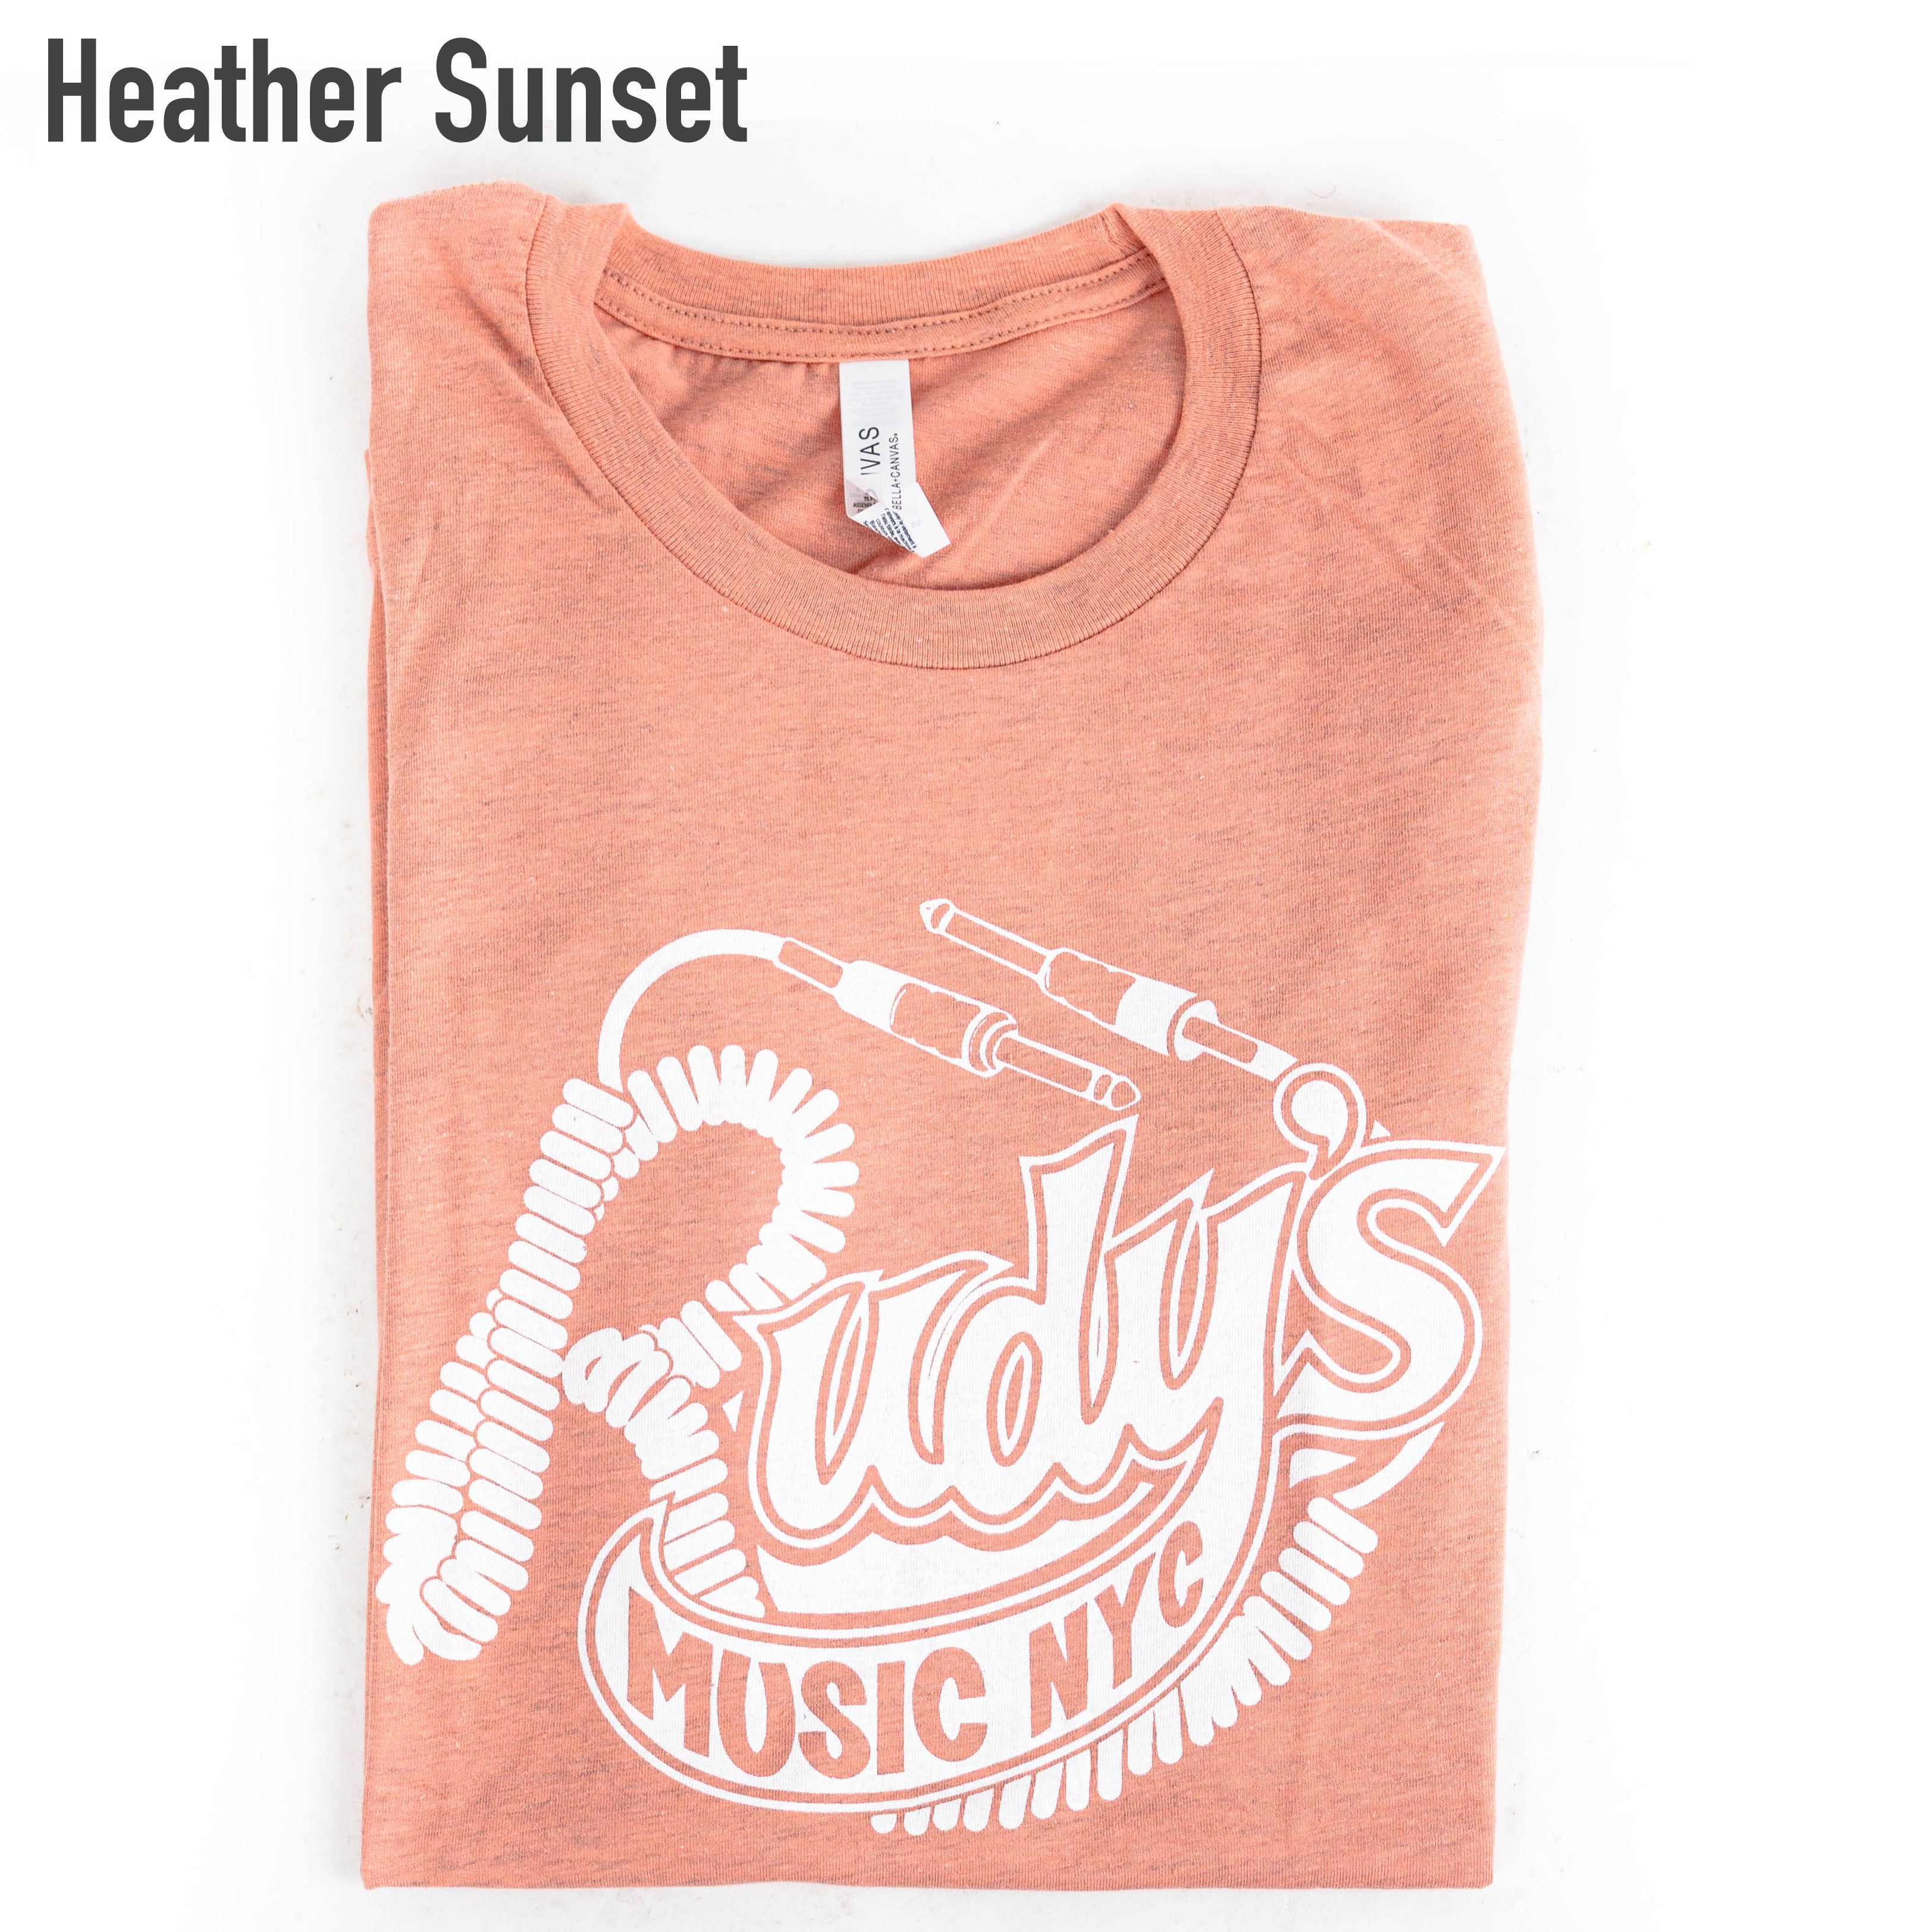 Rudy's Music T-Shirt Men's Rudy's Music